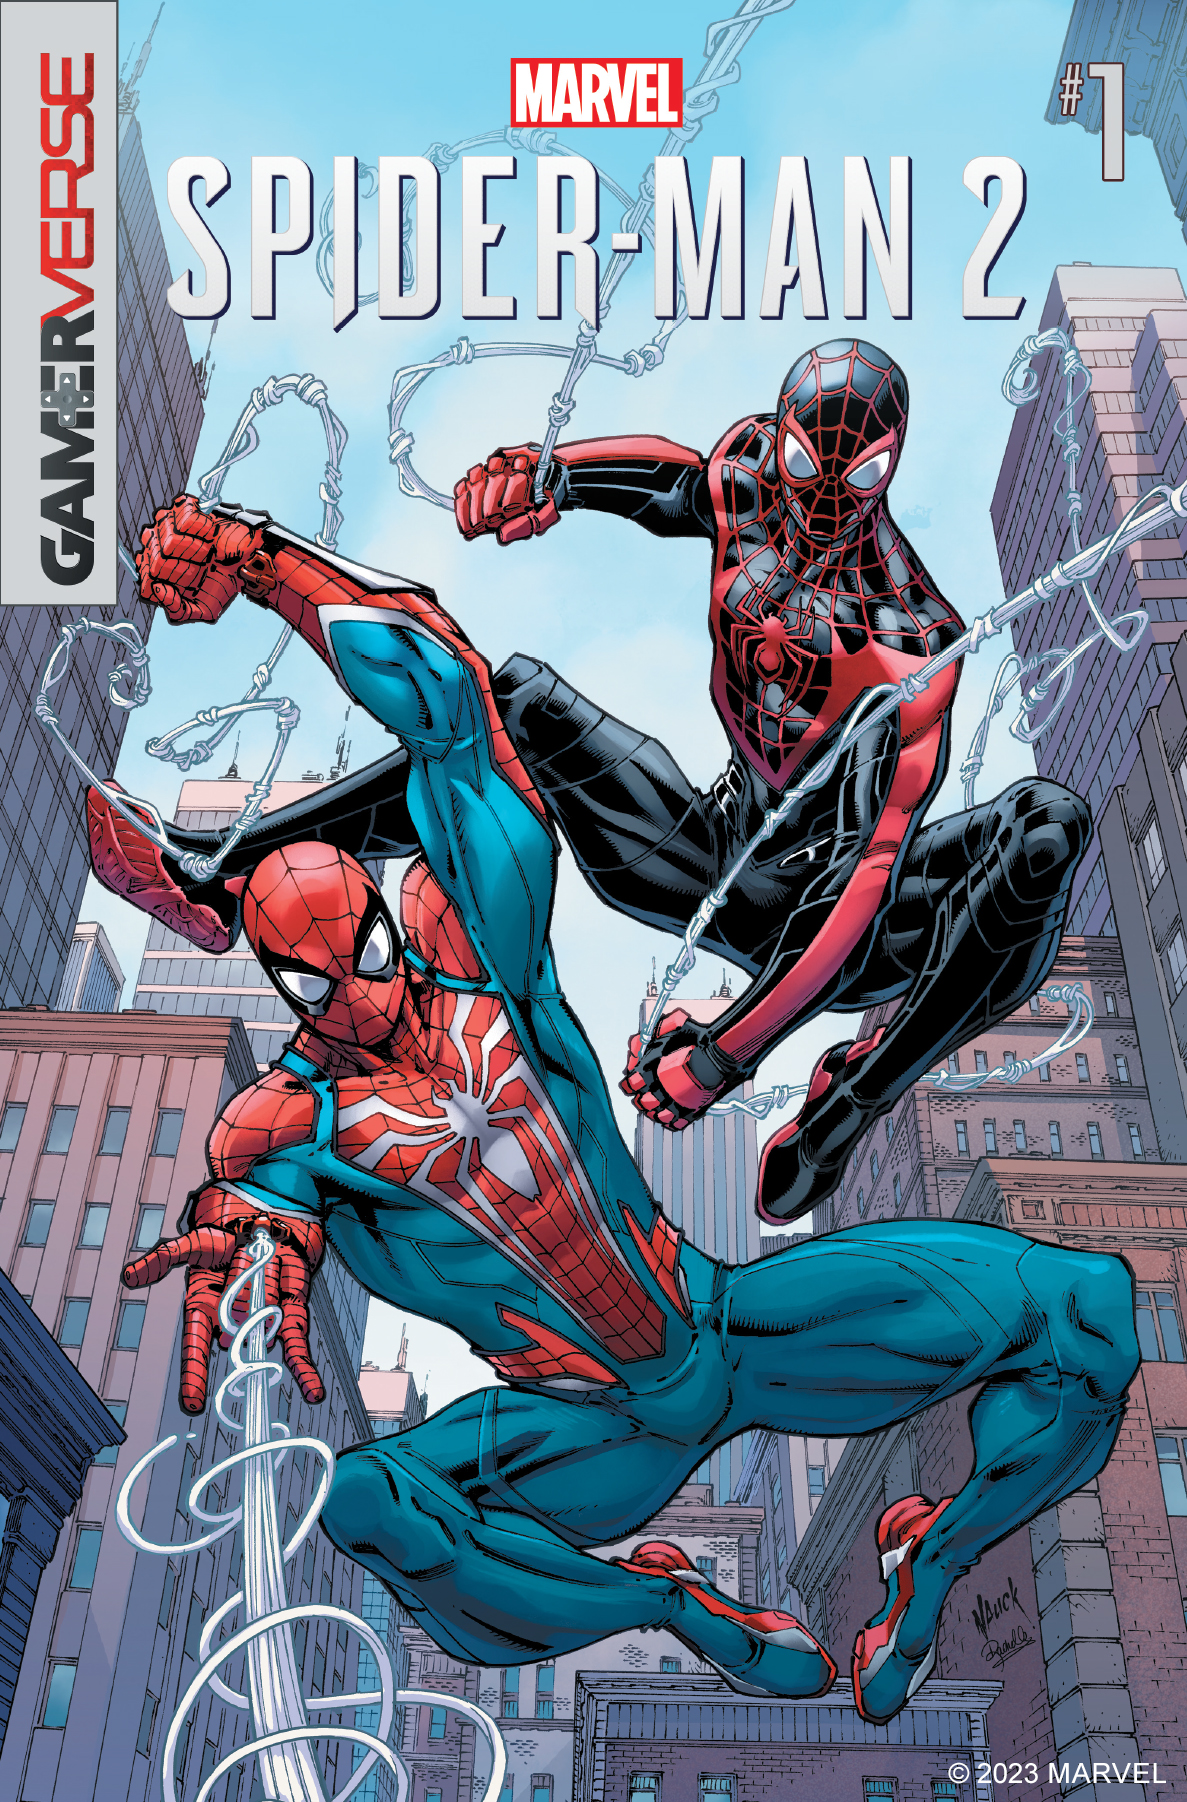 Studio Insomniac Games oznámilo komiks, který poslouží jako prequel k Marvel’s Spider-Man 2